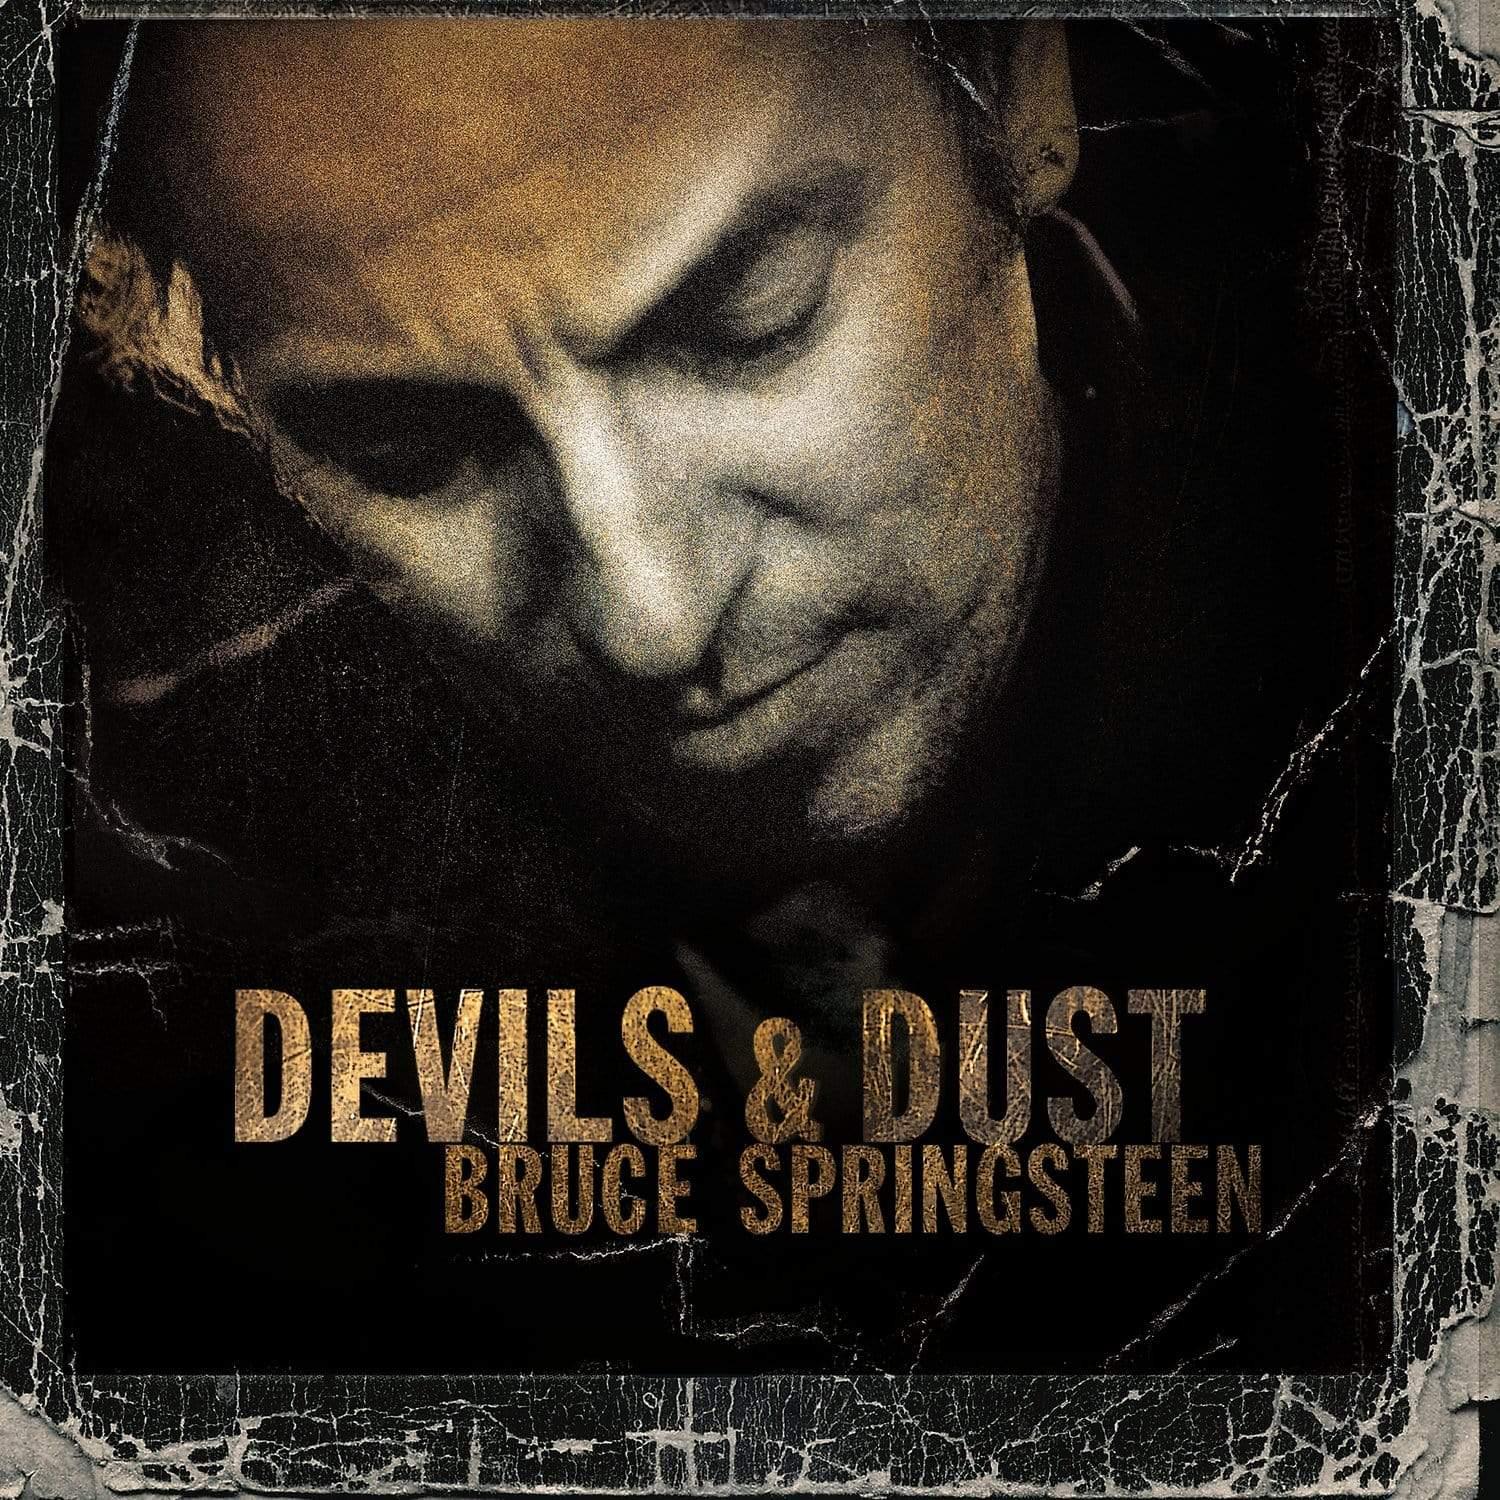 Bruce Springsteen - Devils & Dust - Joco Records